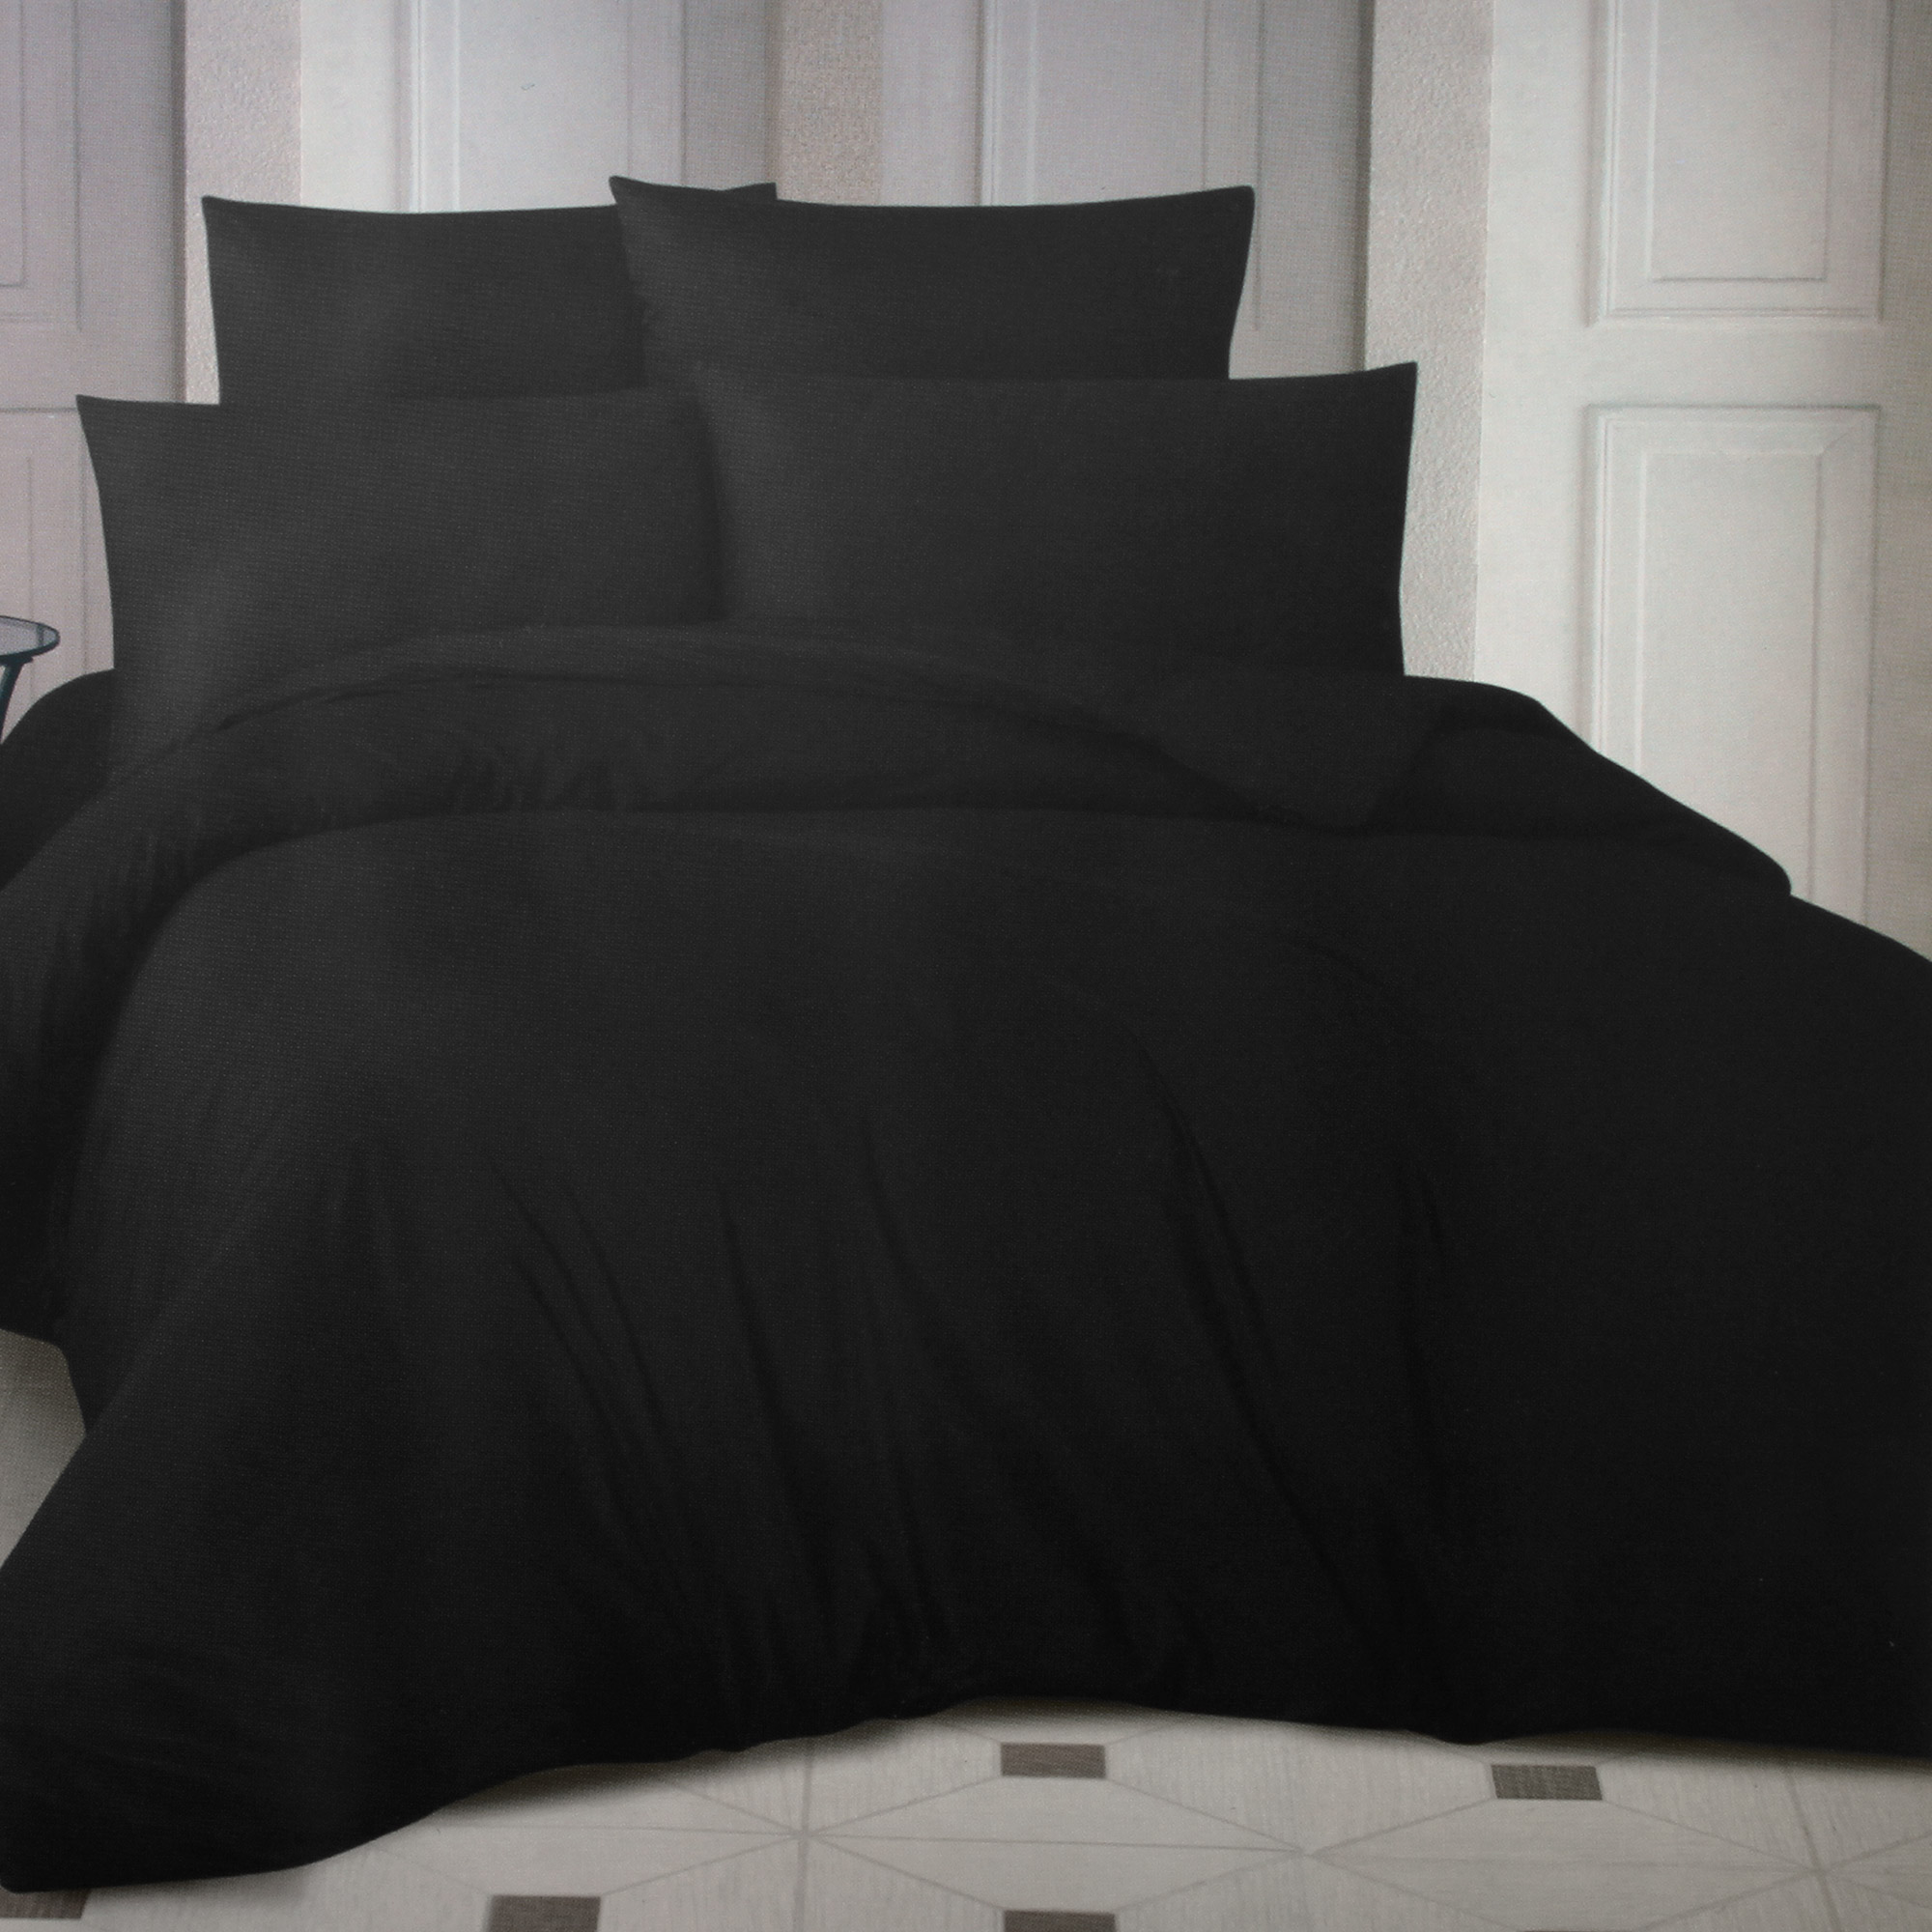 Комплект постельного белья La Besse Ранфорс чёрный Кинг сайз, размер Кинг сайз - фото 1